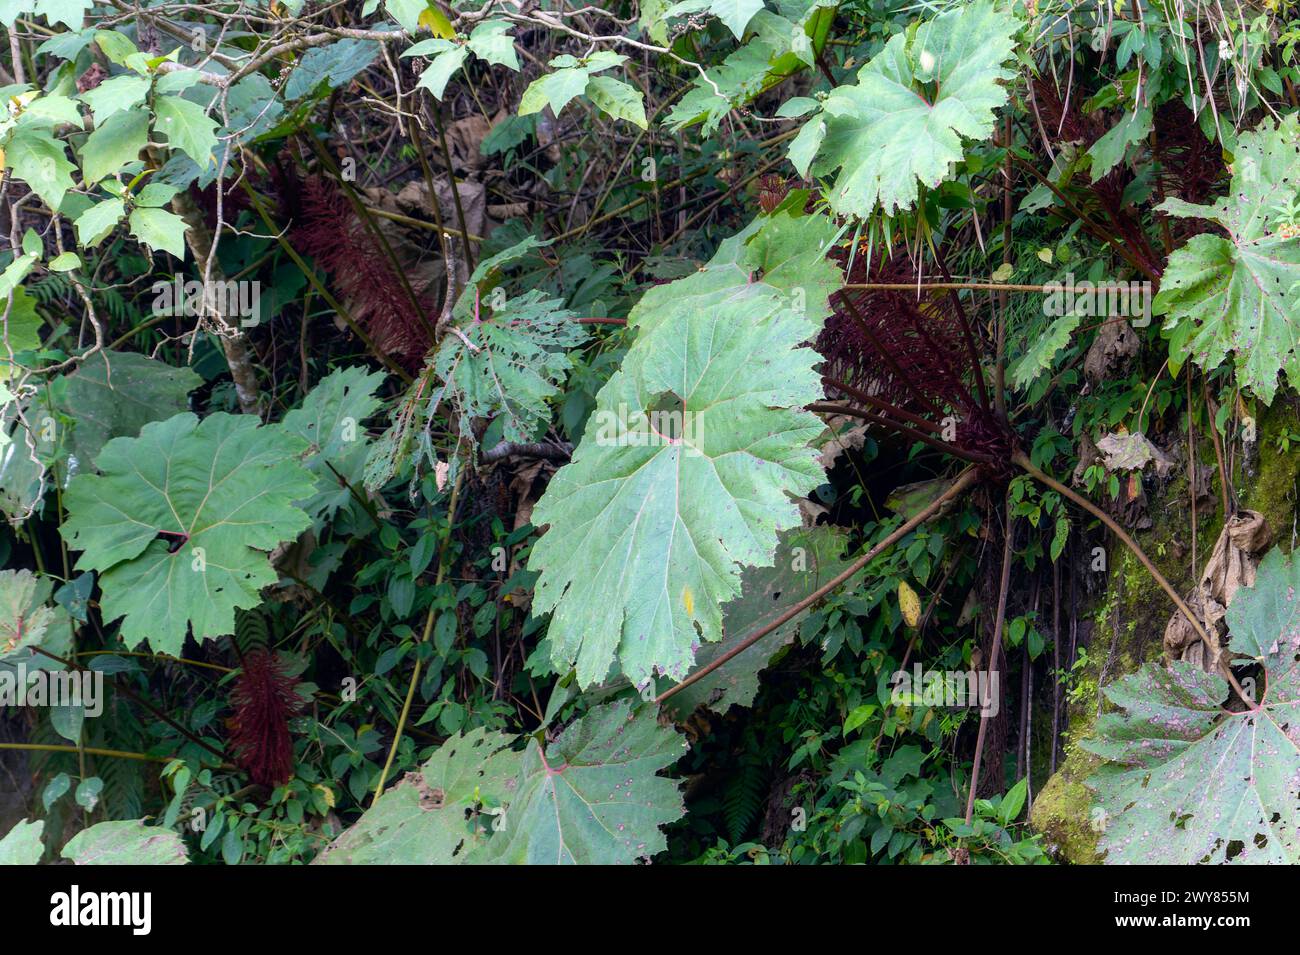 Eine Gruppe grüner Blätter, genannt Poor man's Umbrella, Gunnera insignis, wächst in einem üppigen Wald in Chiapas, Mexiko. Mit lebendigem Laub und n Stockfoto